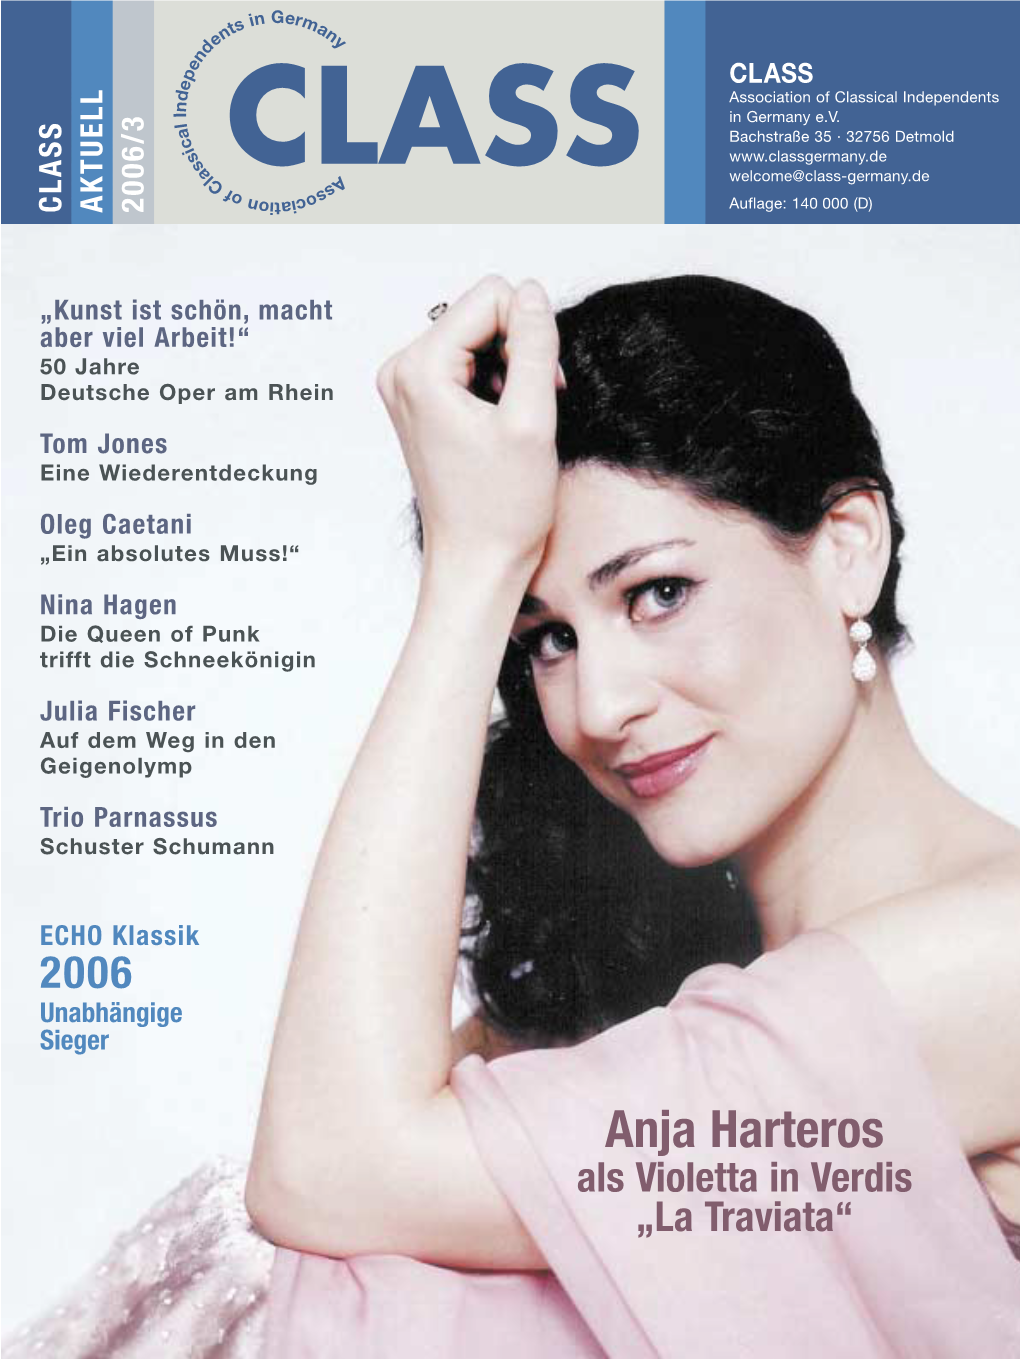 Anja Harteros Als Violetta in Verdis „La Traviata“